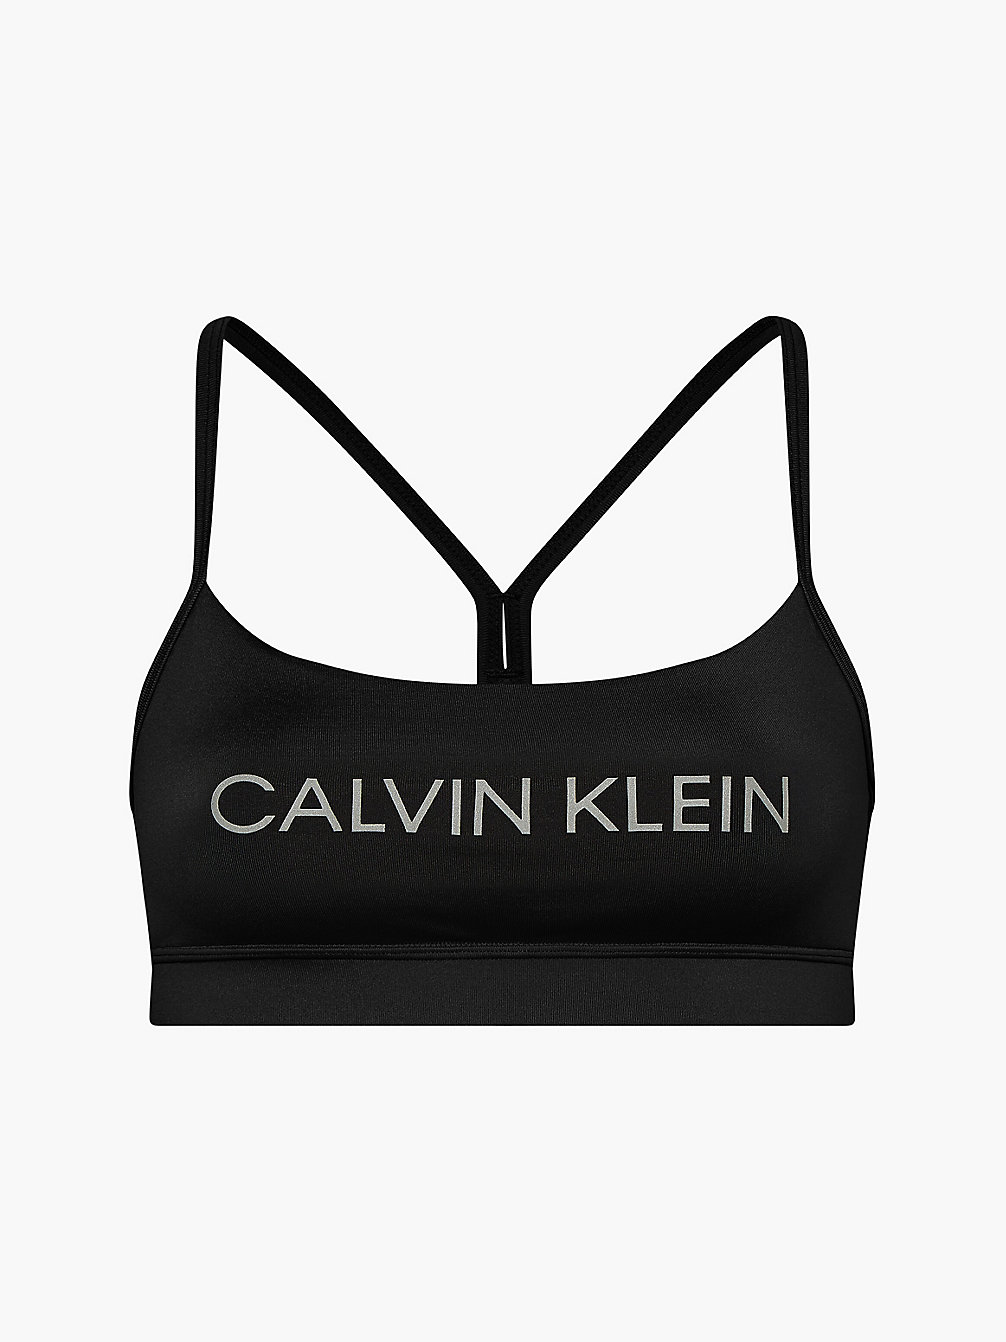 CK BLACK/REFLECTIVE SILVER Brassière De Sport Faibles Impacts undefined femmes Calvin Klein